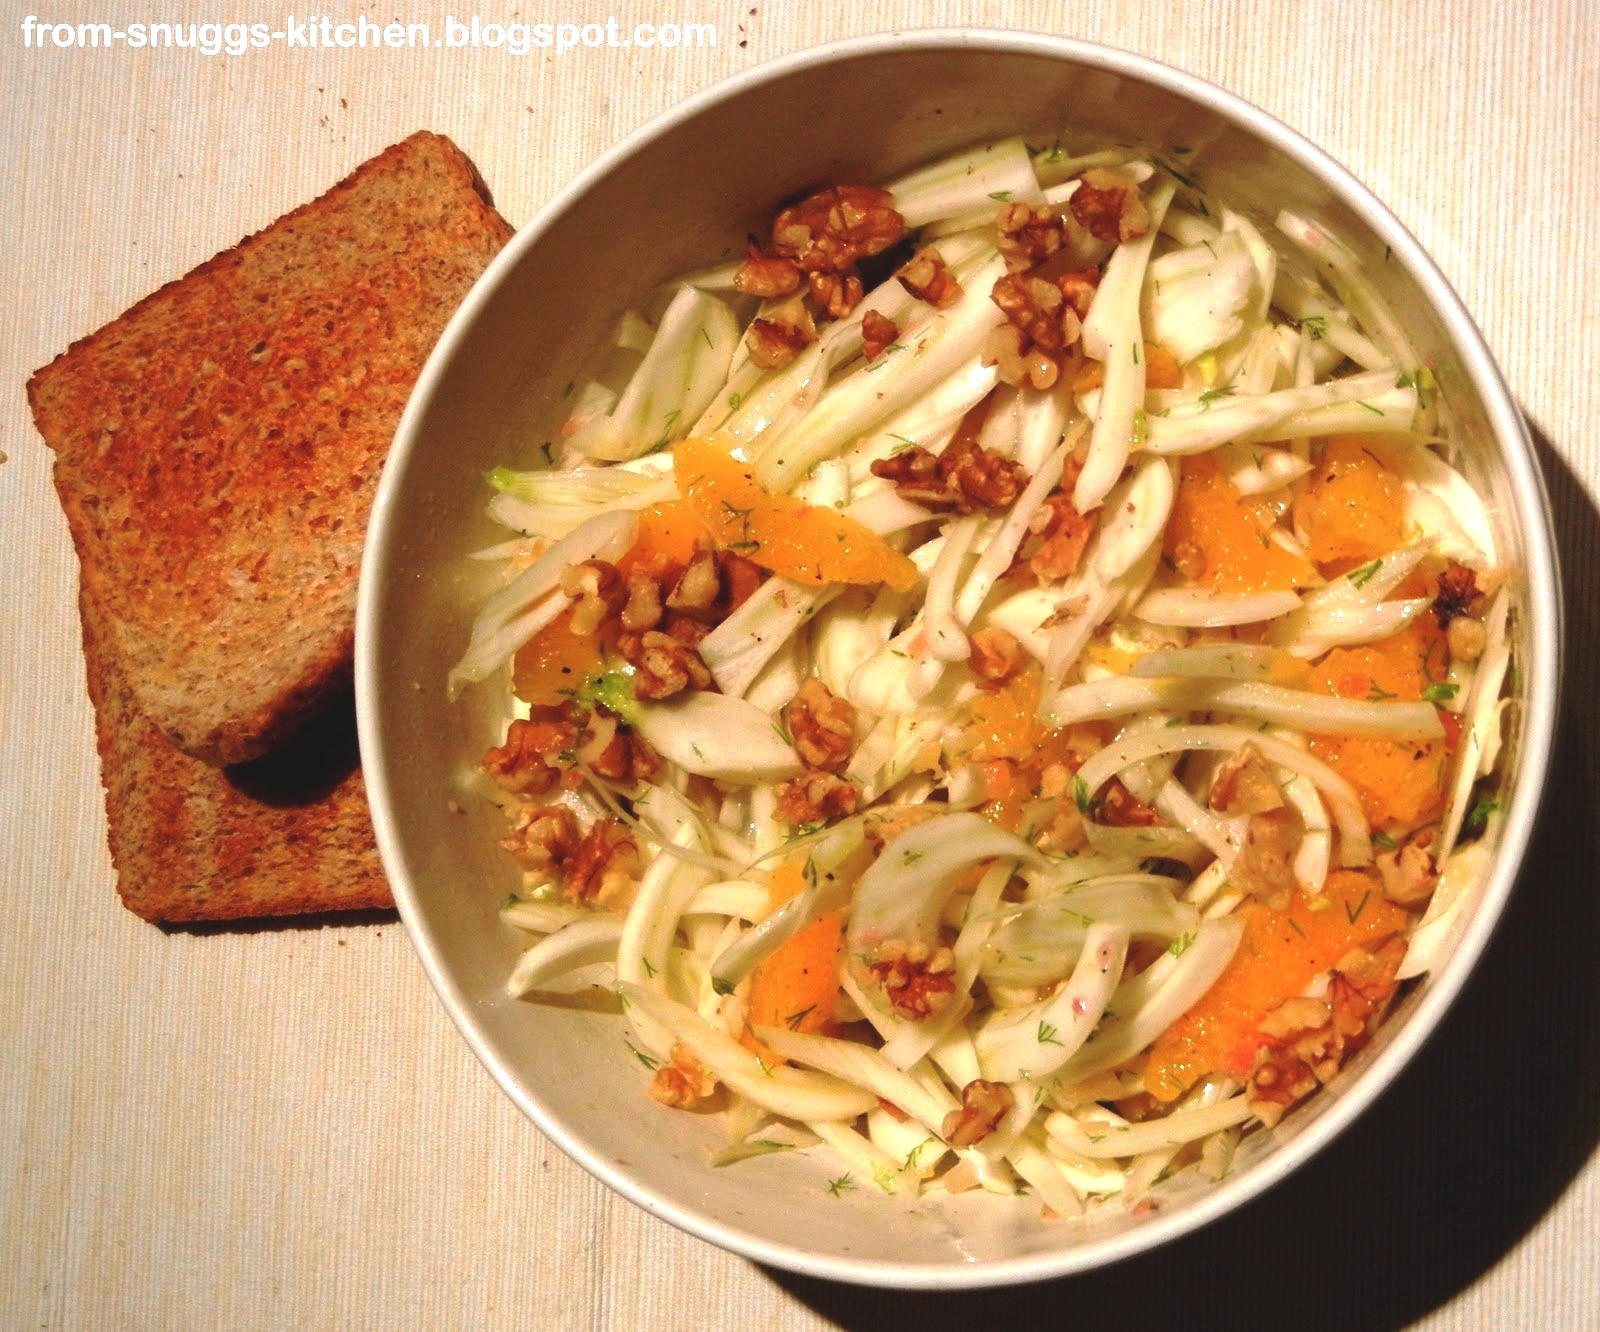 Fenchelsalat mit Orangen - From-Snuggs-Kitchen